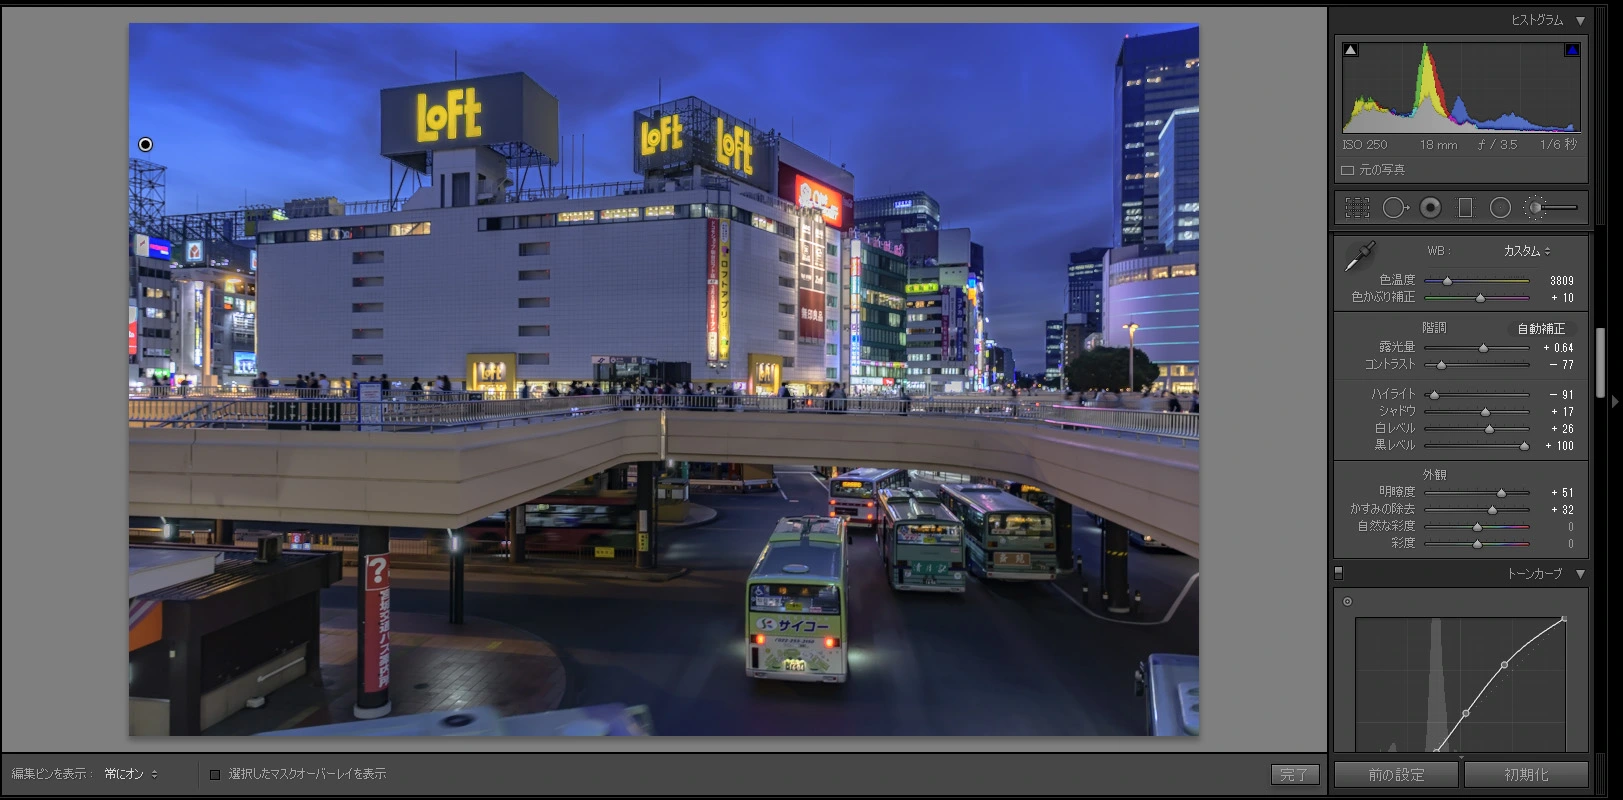 仙台駅前ペデストリアンデッキの夜景 Lightroom RAW現像